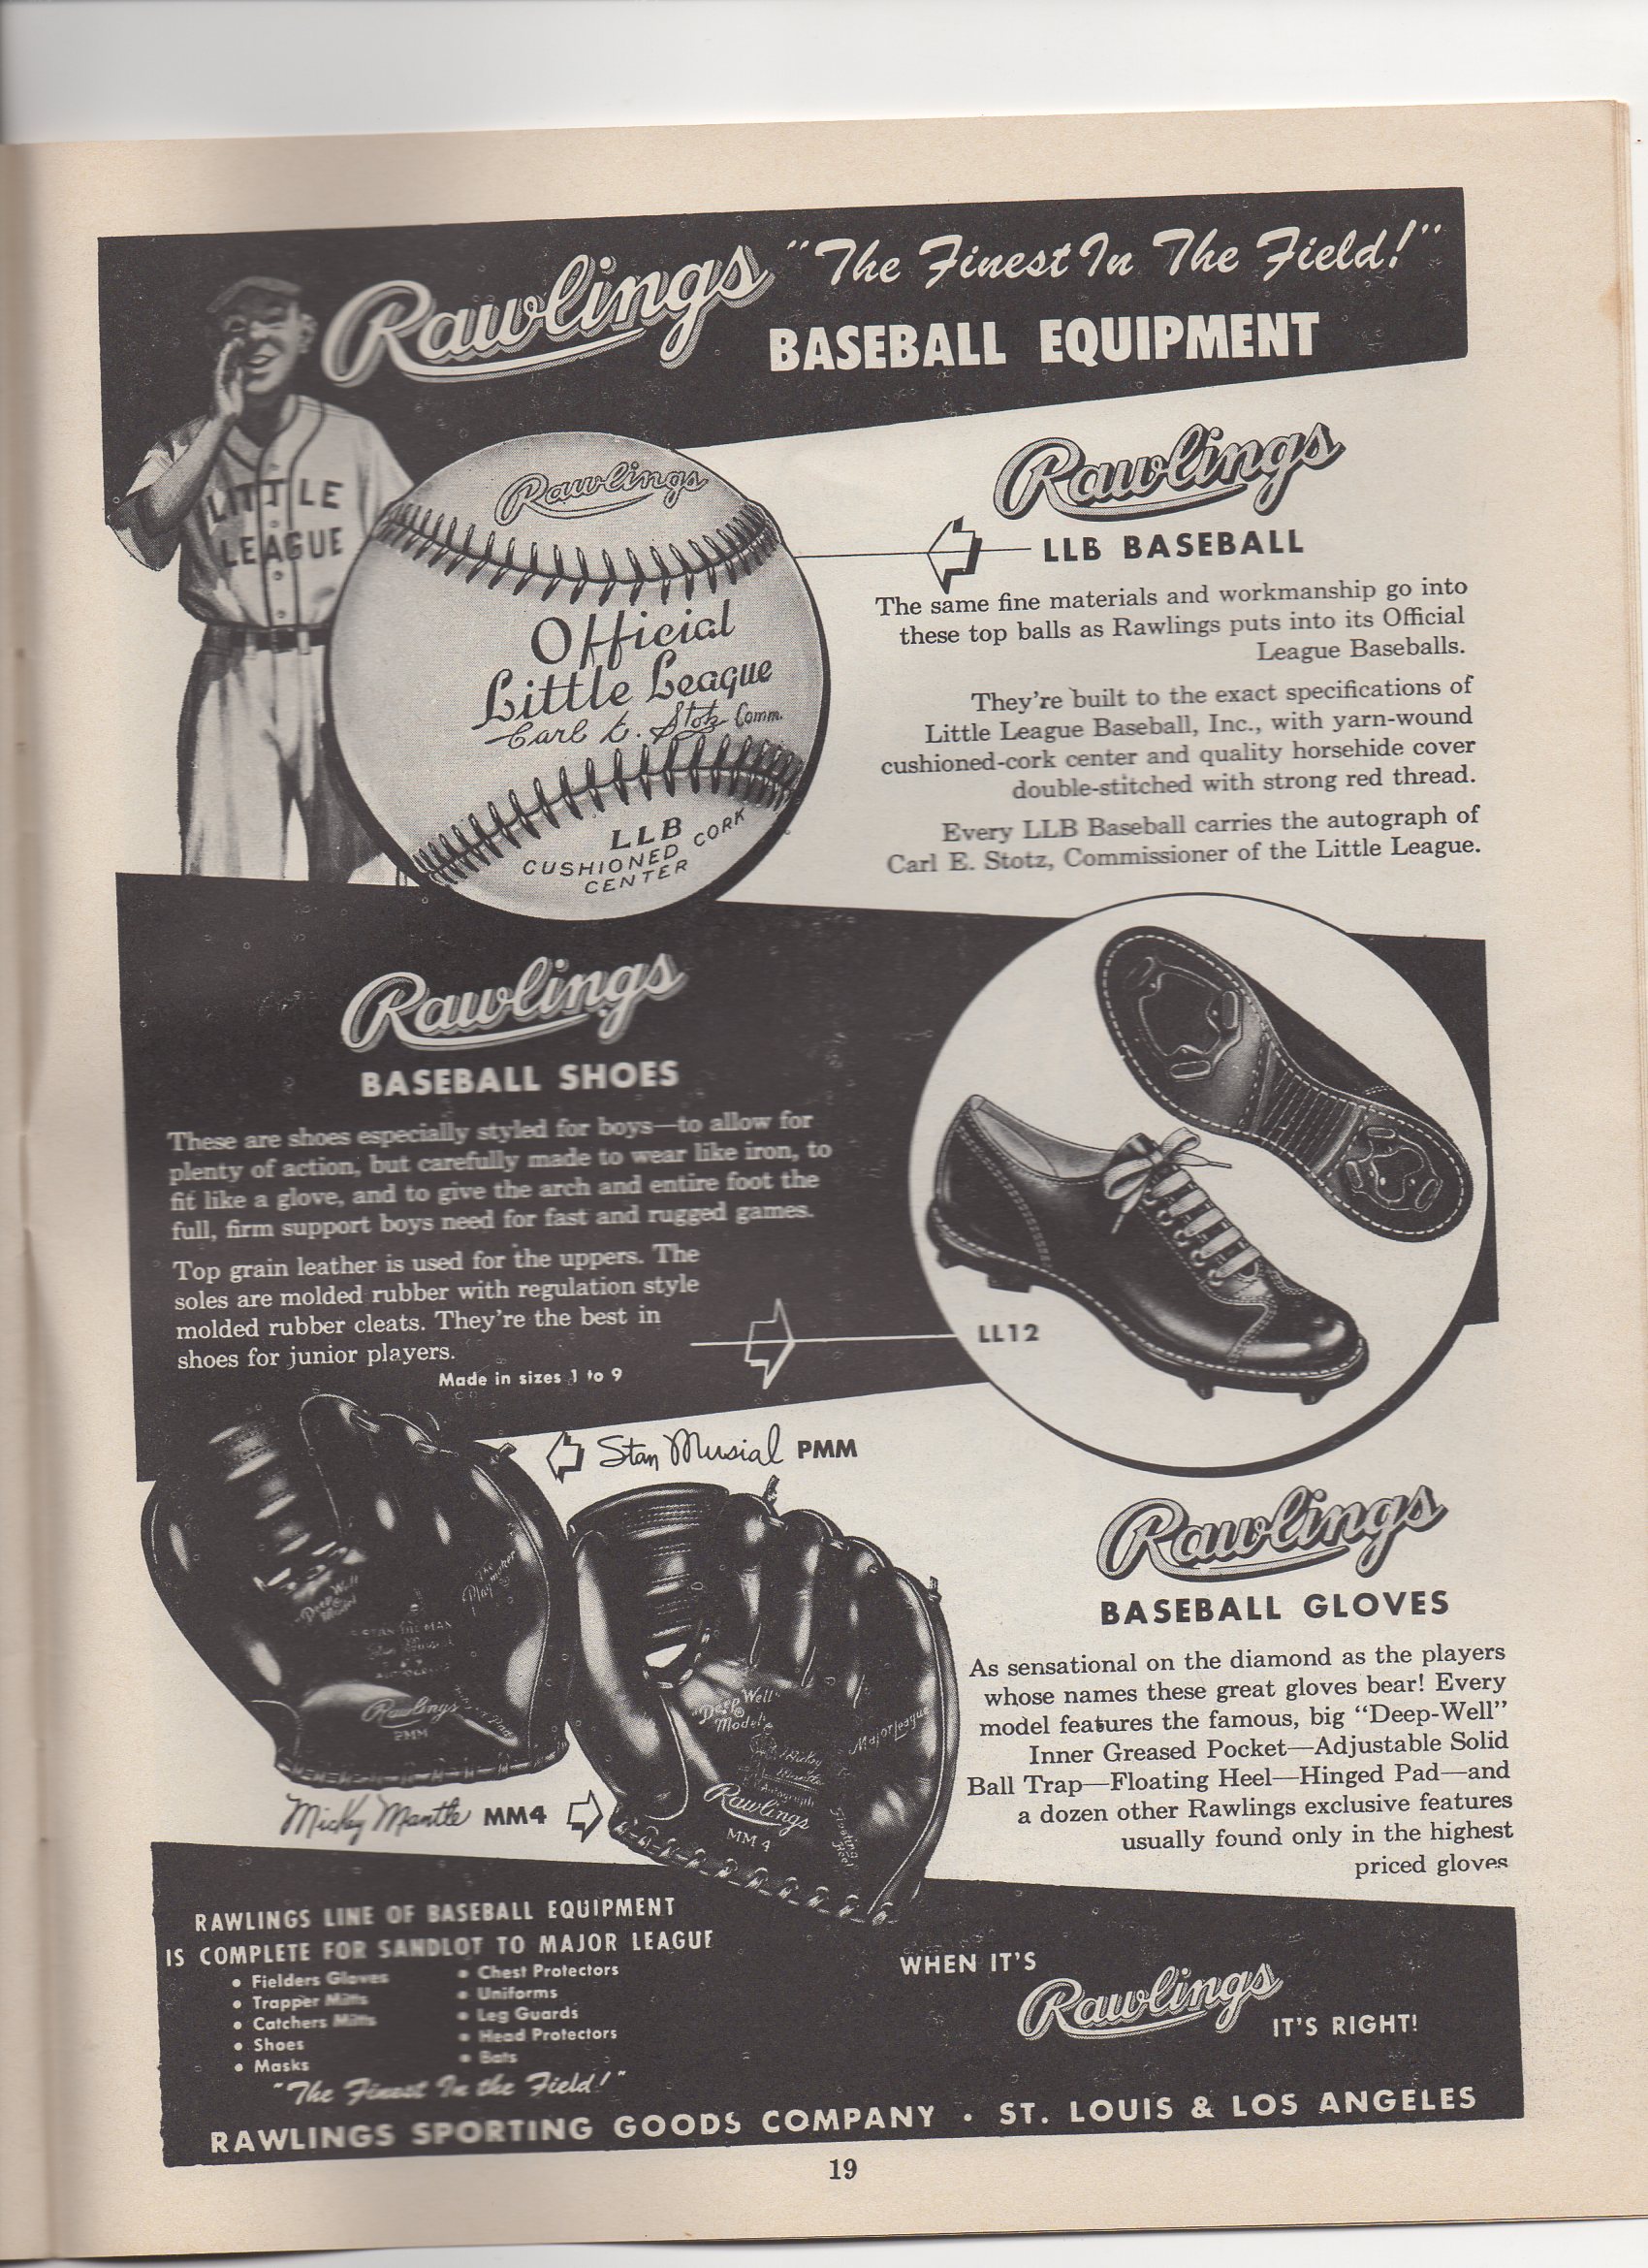 1954 little leaguer magazine, december